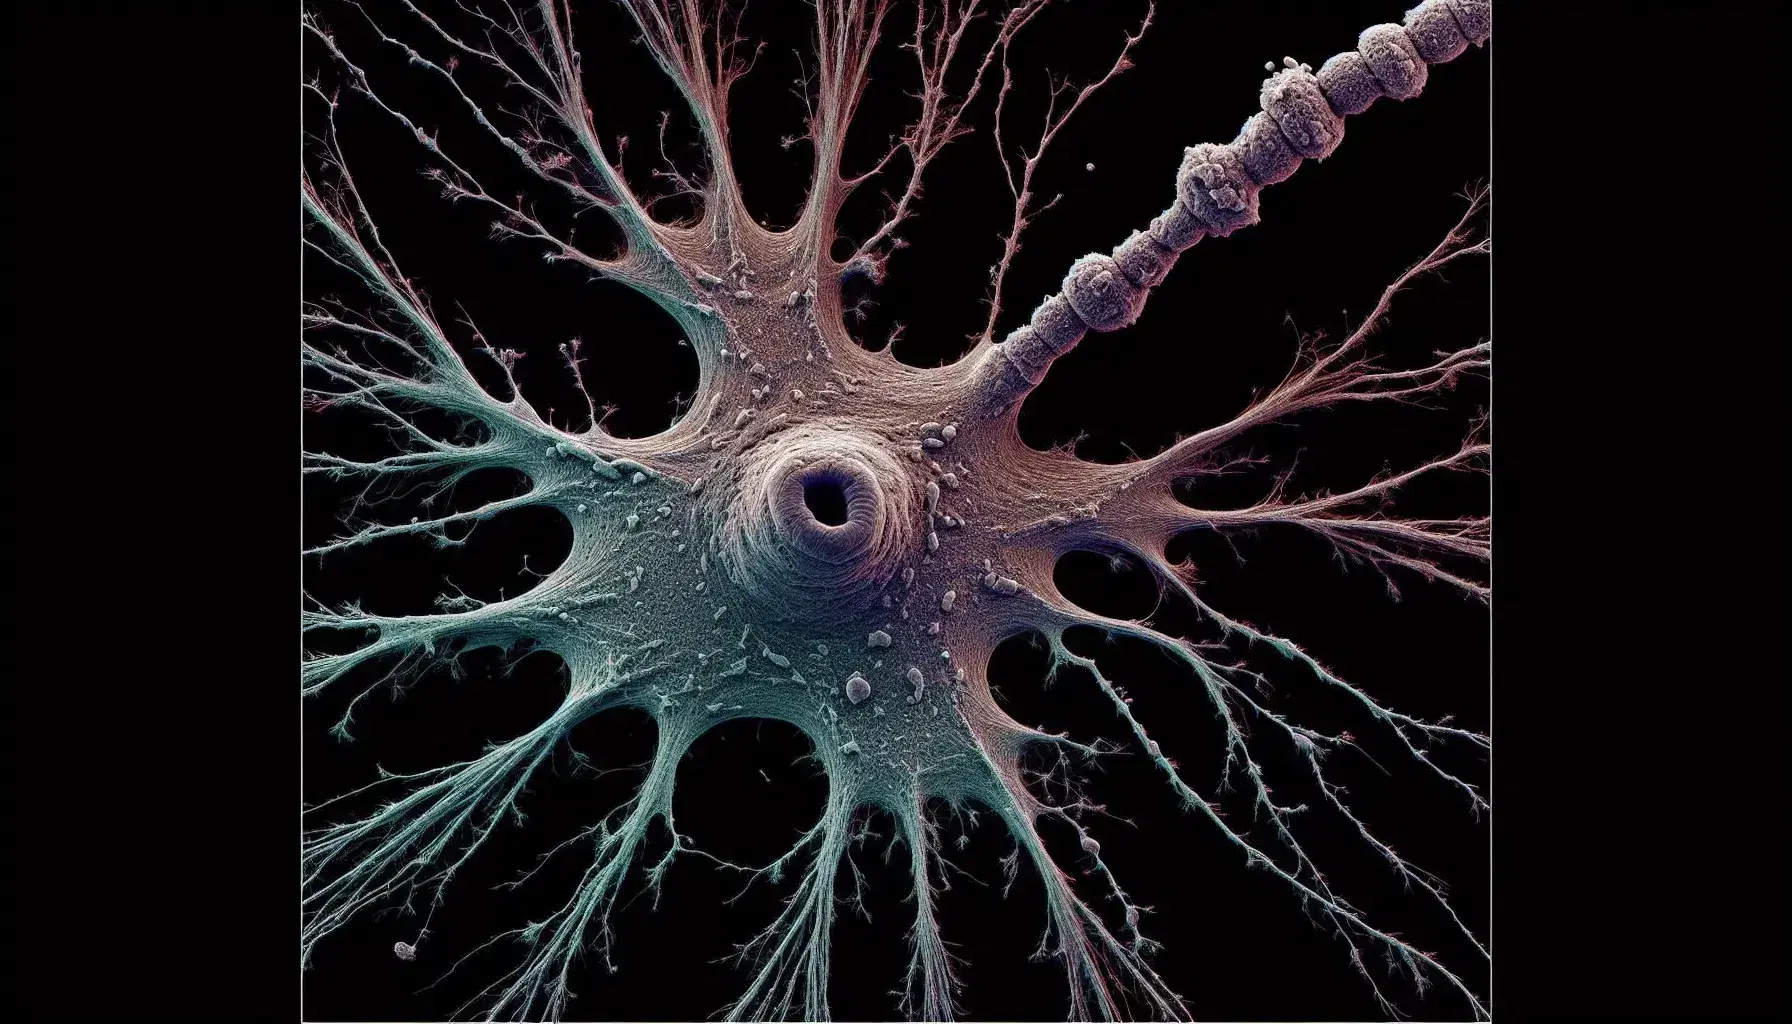 Micrografía electrónica de color de una neurona destacando su cuerpo celular grisáceo, dendritas ramificadas y un axón largo, sobre fondo oscuro.